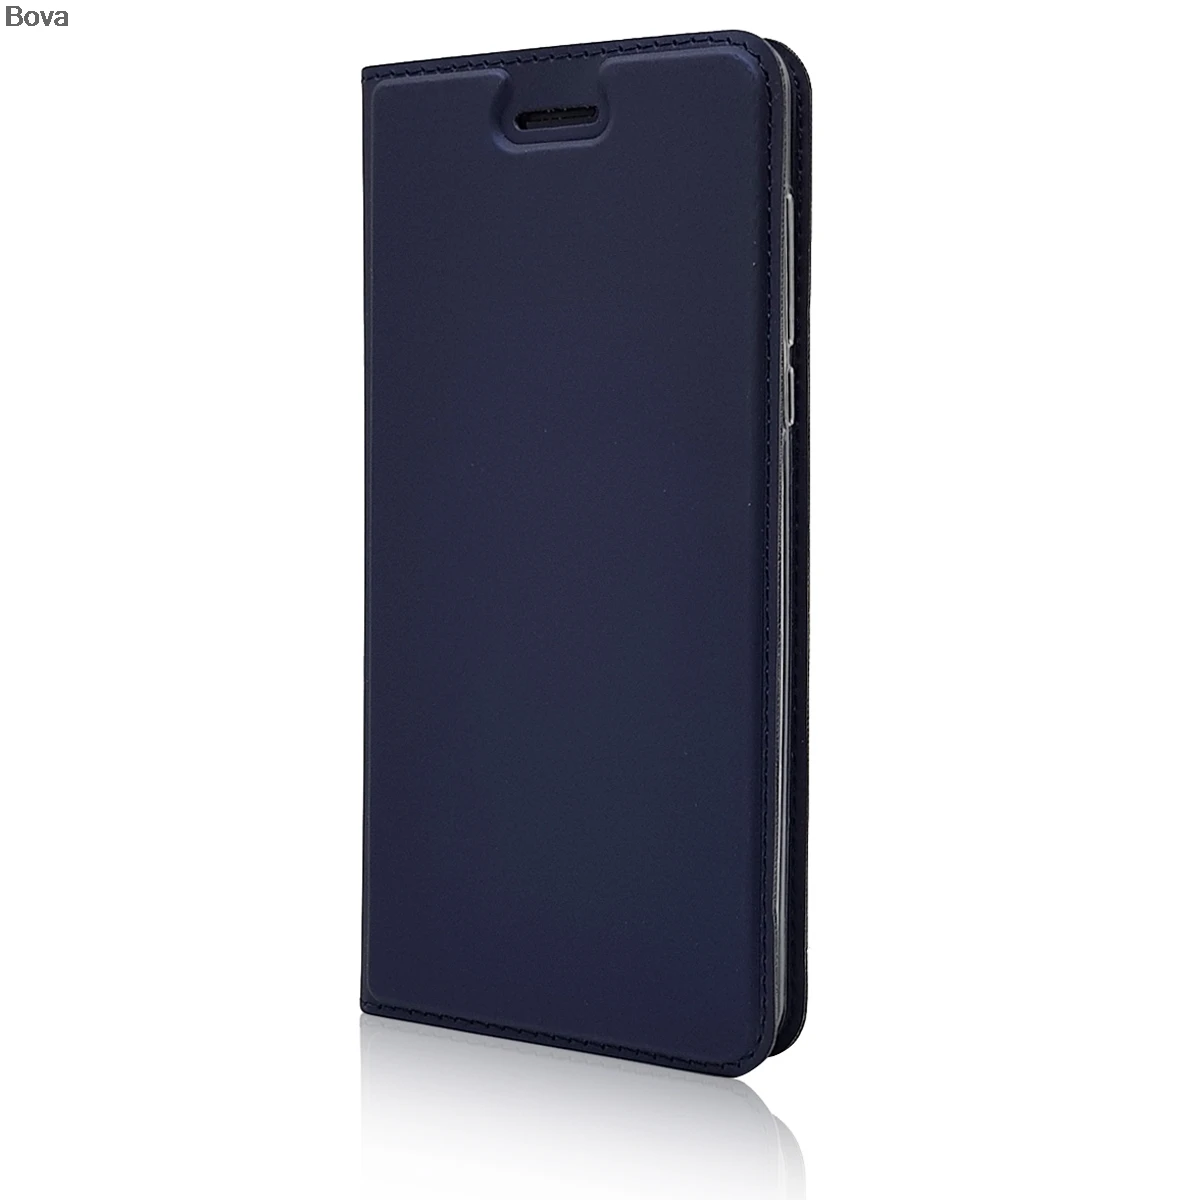 Матовый чехол-кошелек, флип-чехол для Nokia 6 5 3, магнитный адсорбционный чехол для телефона, деловой стиль - Цвет: Небесно-голубой